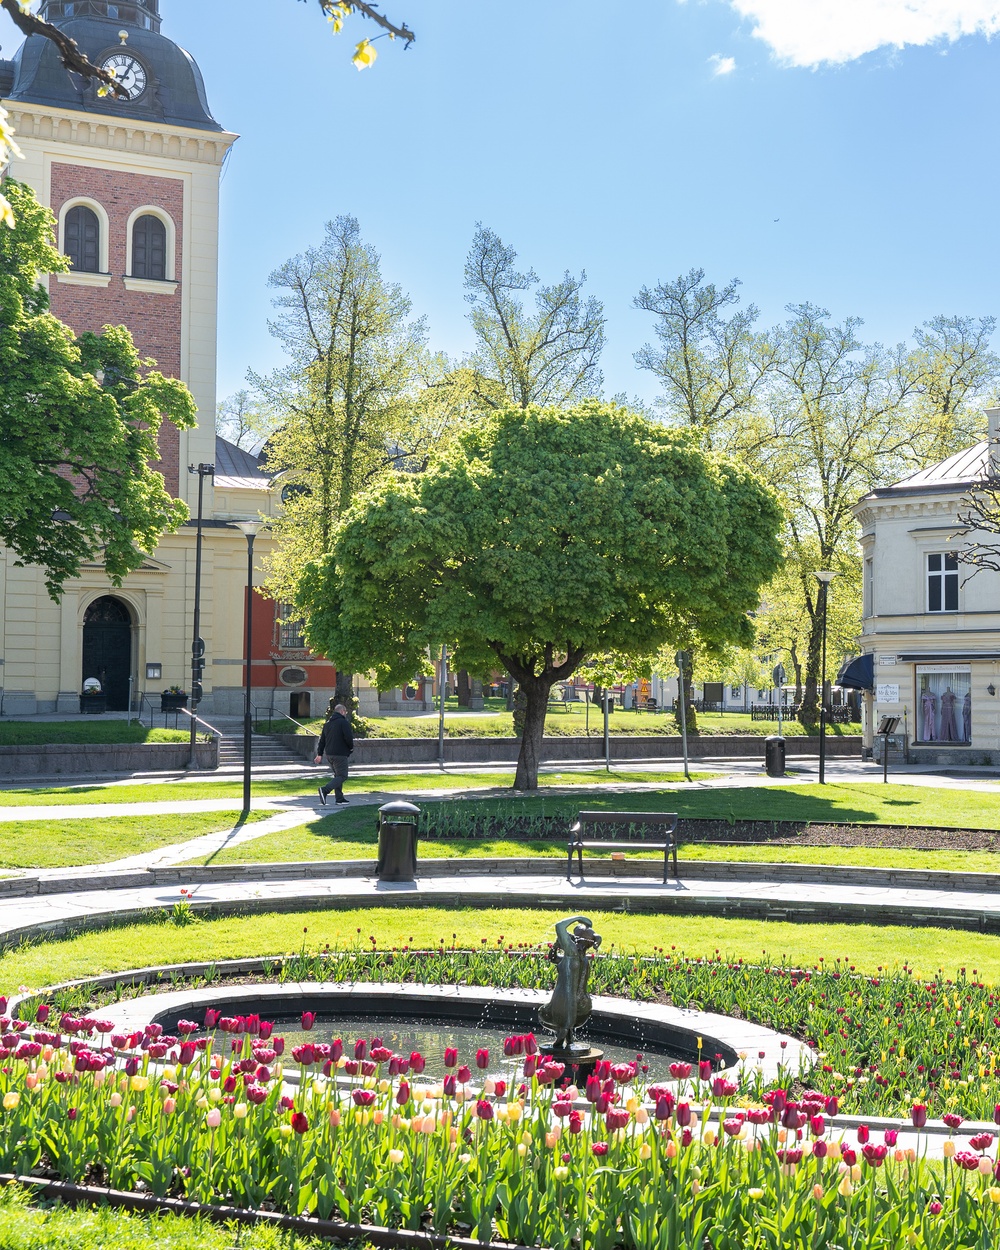 Träd, park och kyrka i Södertälje.